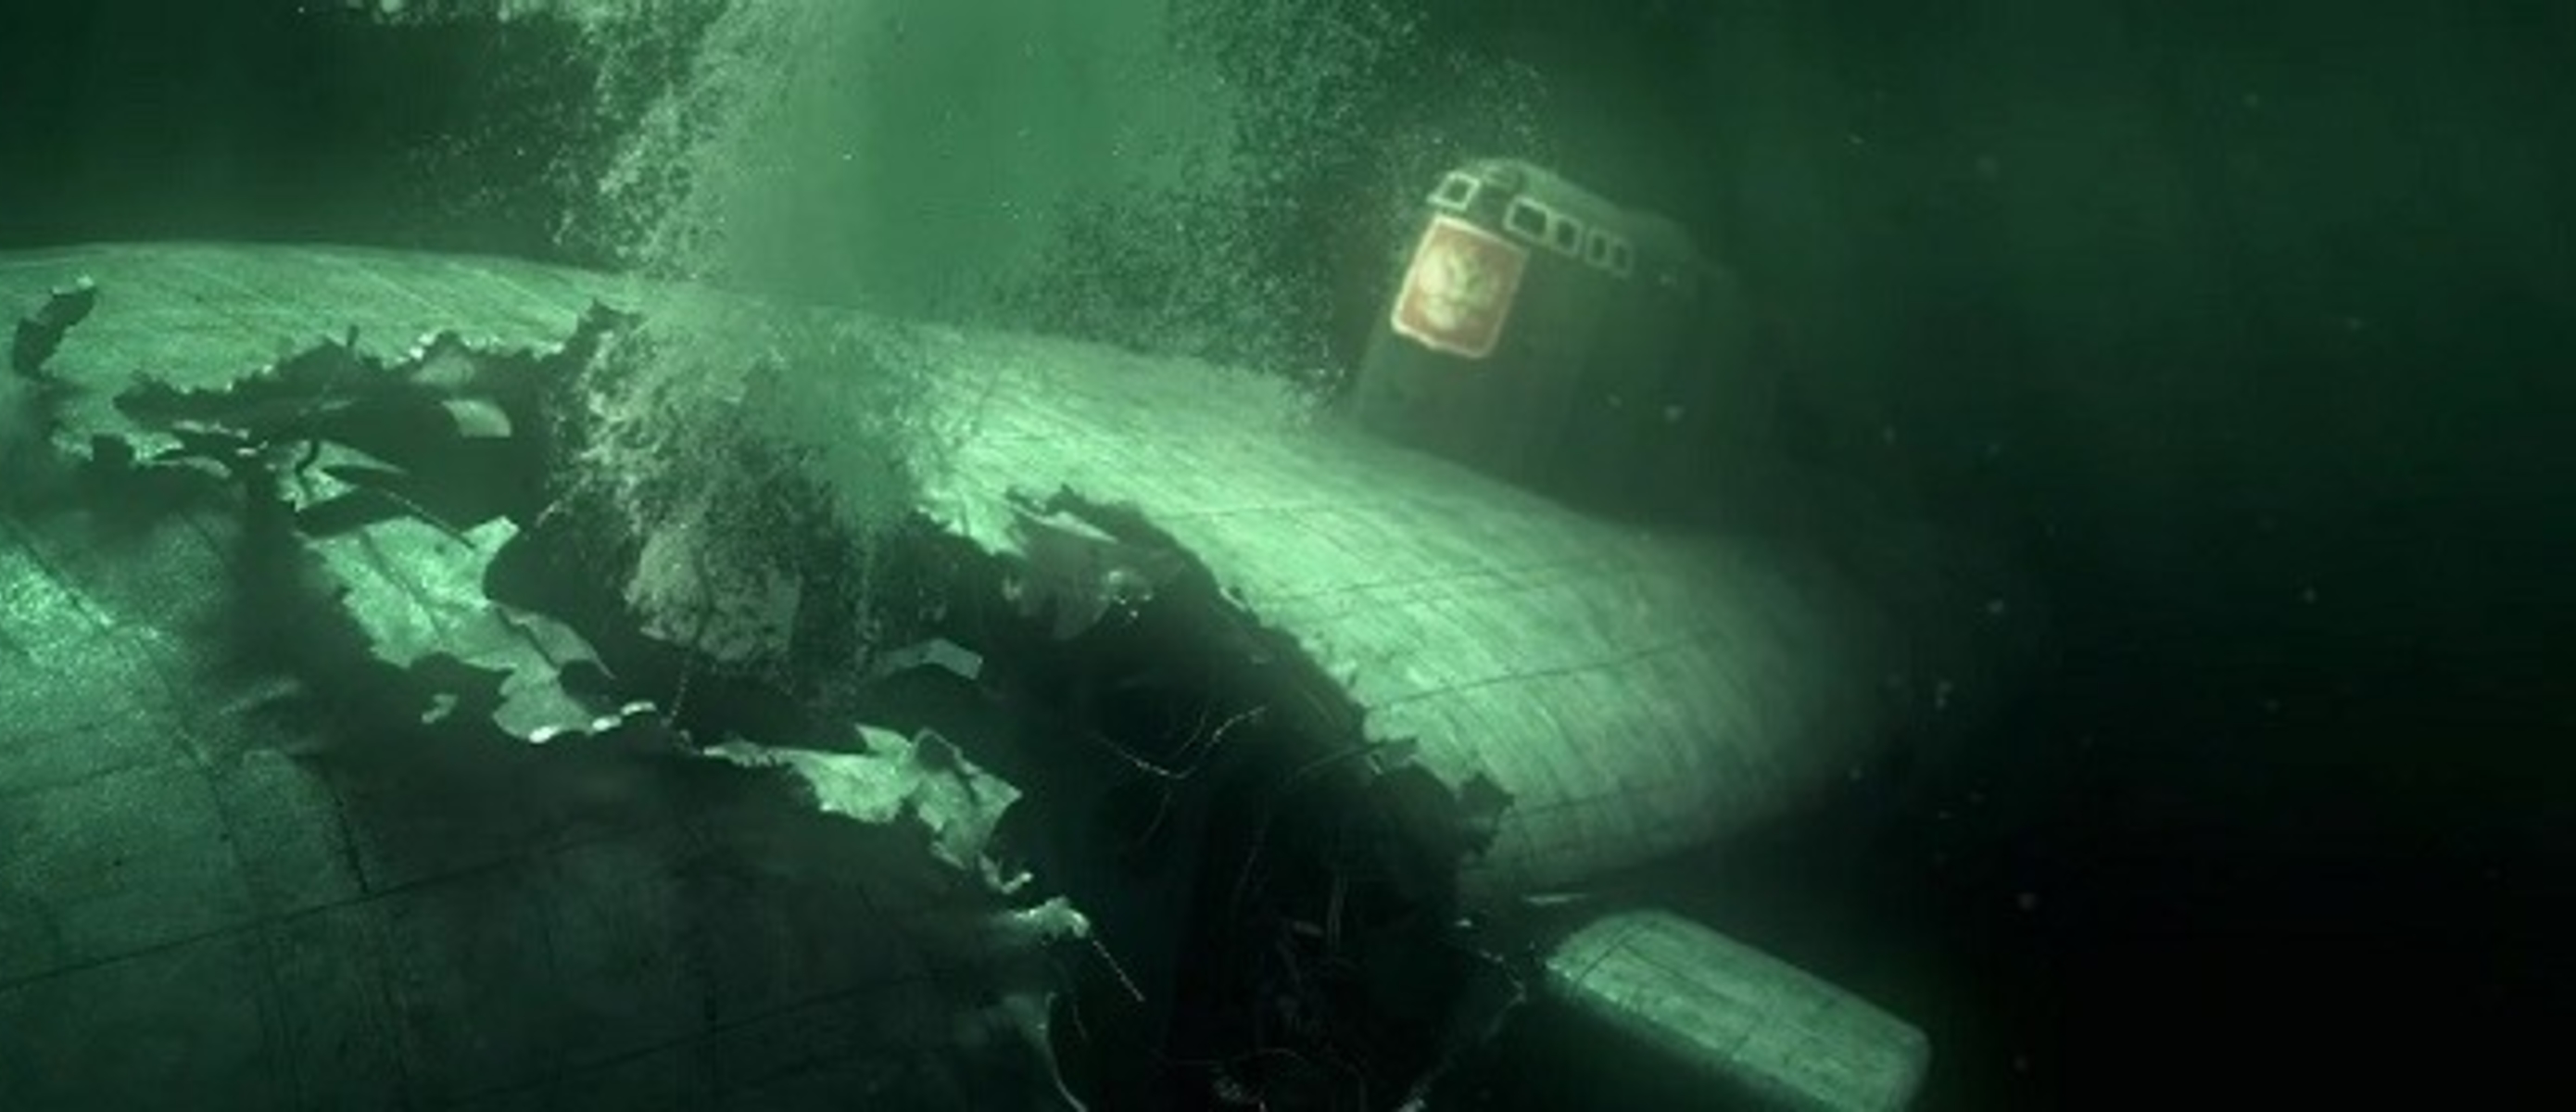 30 августа 2000. Подводная лодка к-141 «Курск». Курск подводная лодка катастрофа. Курск 141 атомная подводная лодка. К-141 «Курск».